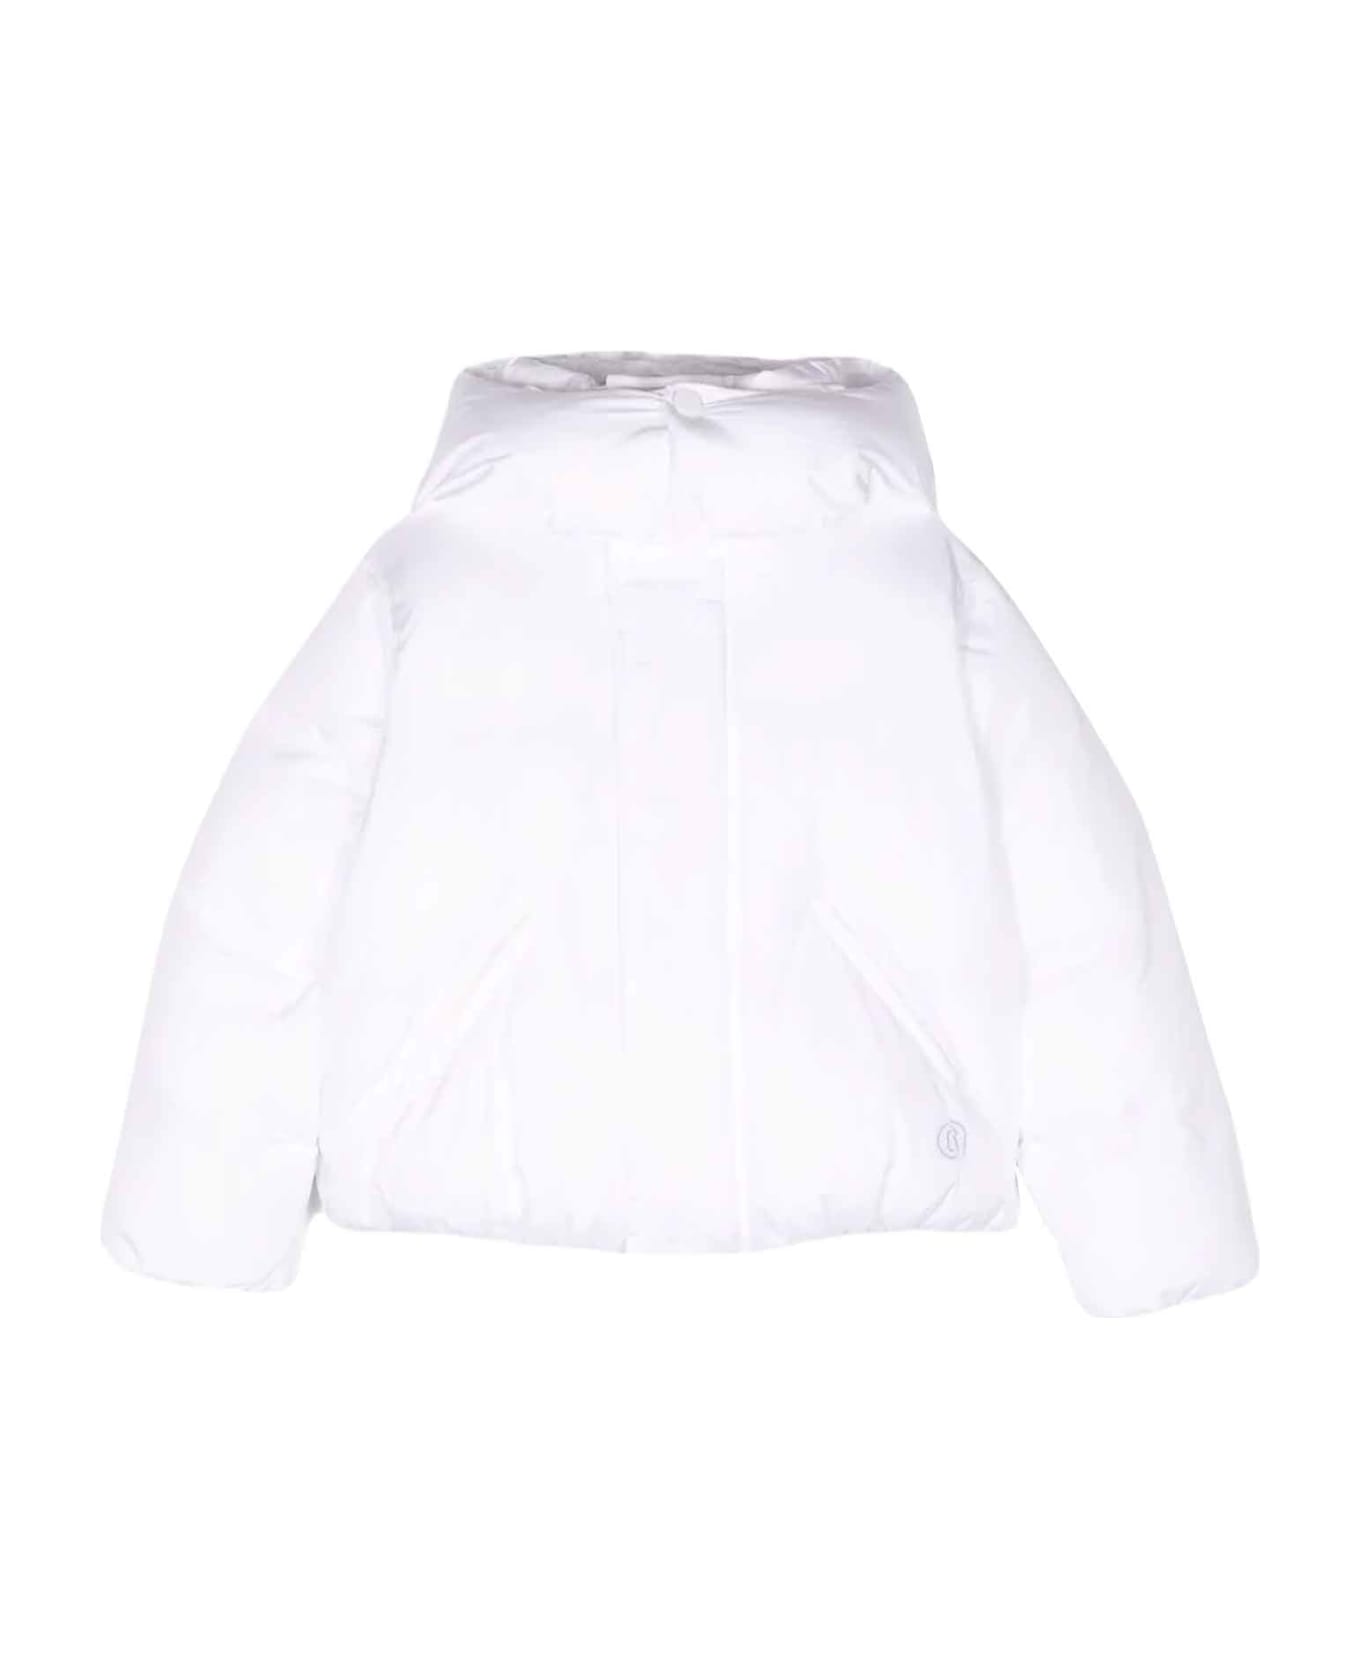 MM6 Maison Margiela White Down Jacket Unisex - Bianco